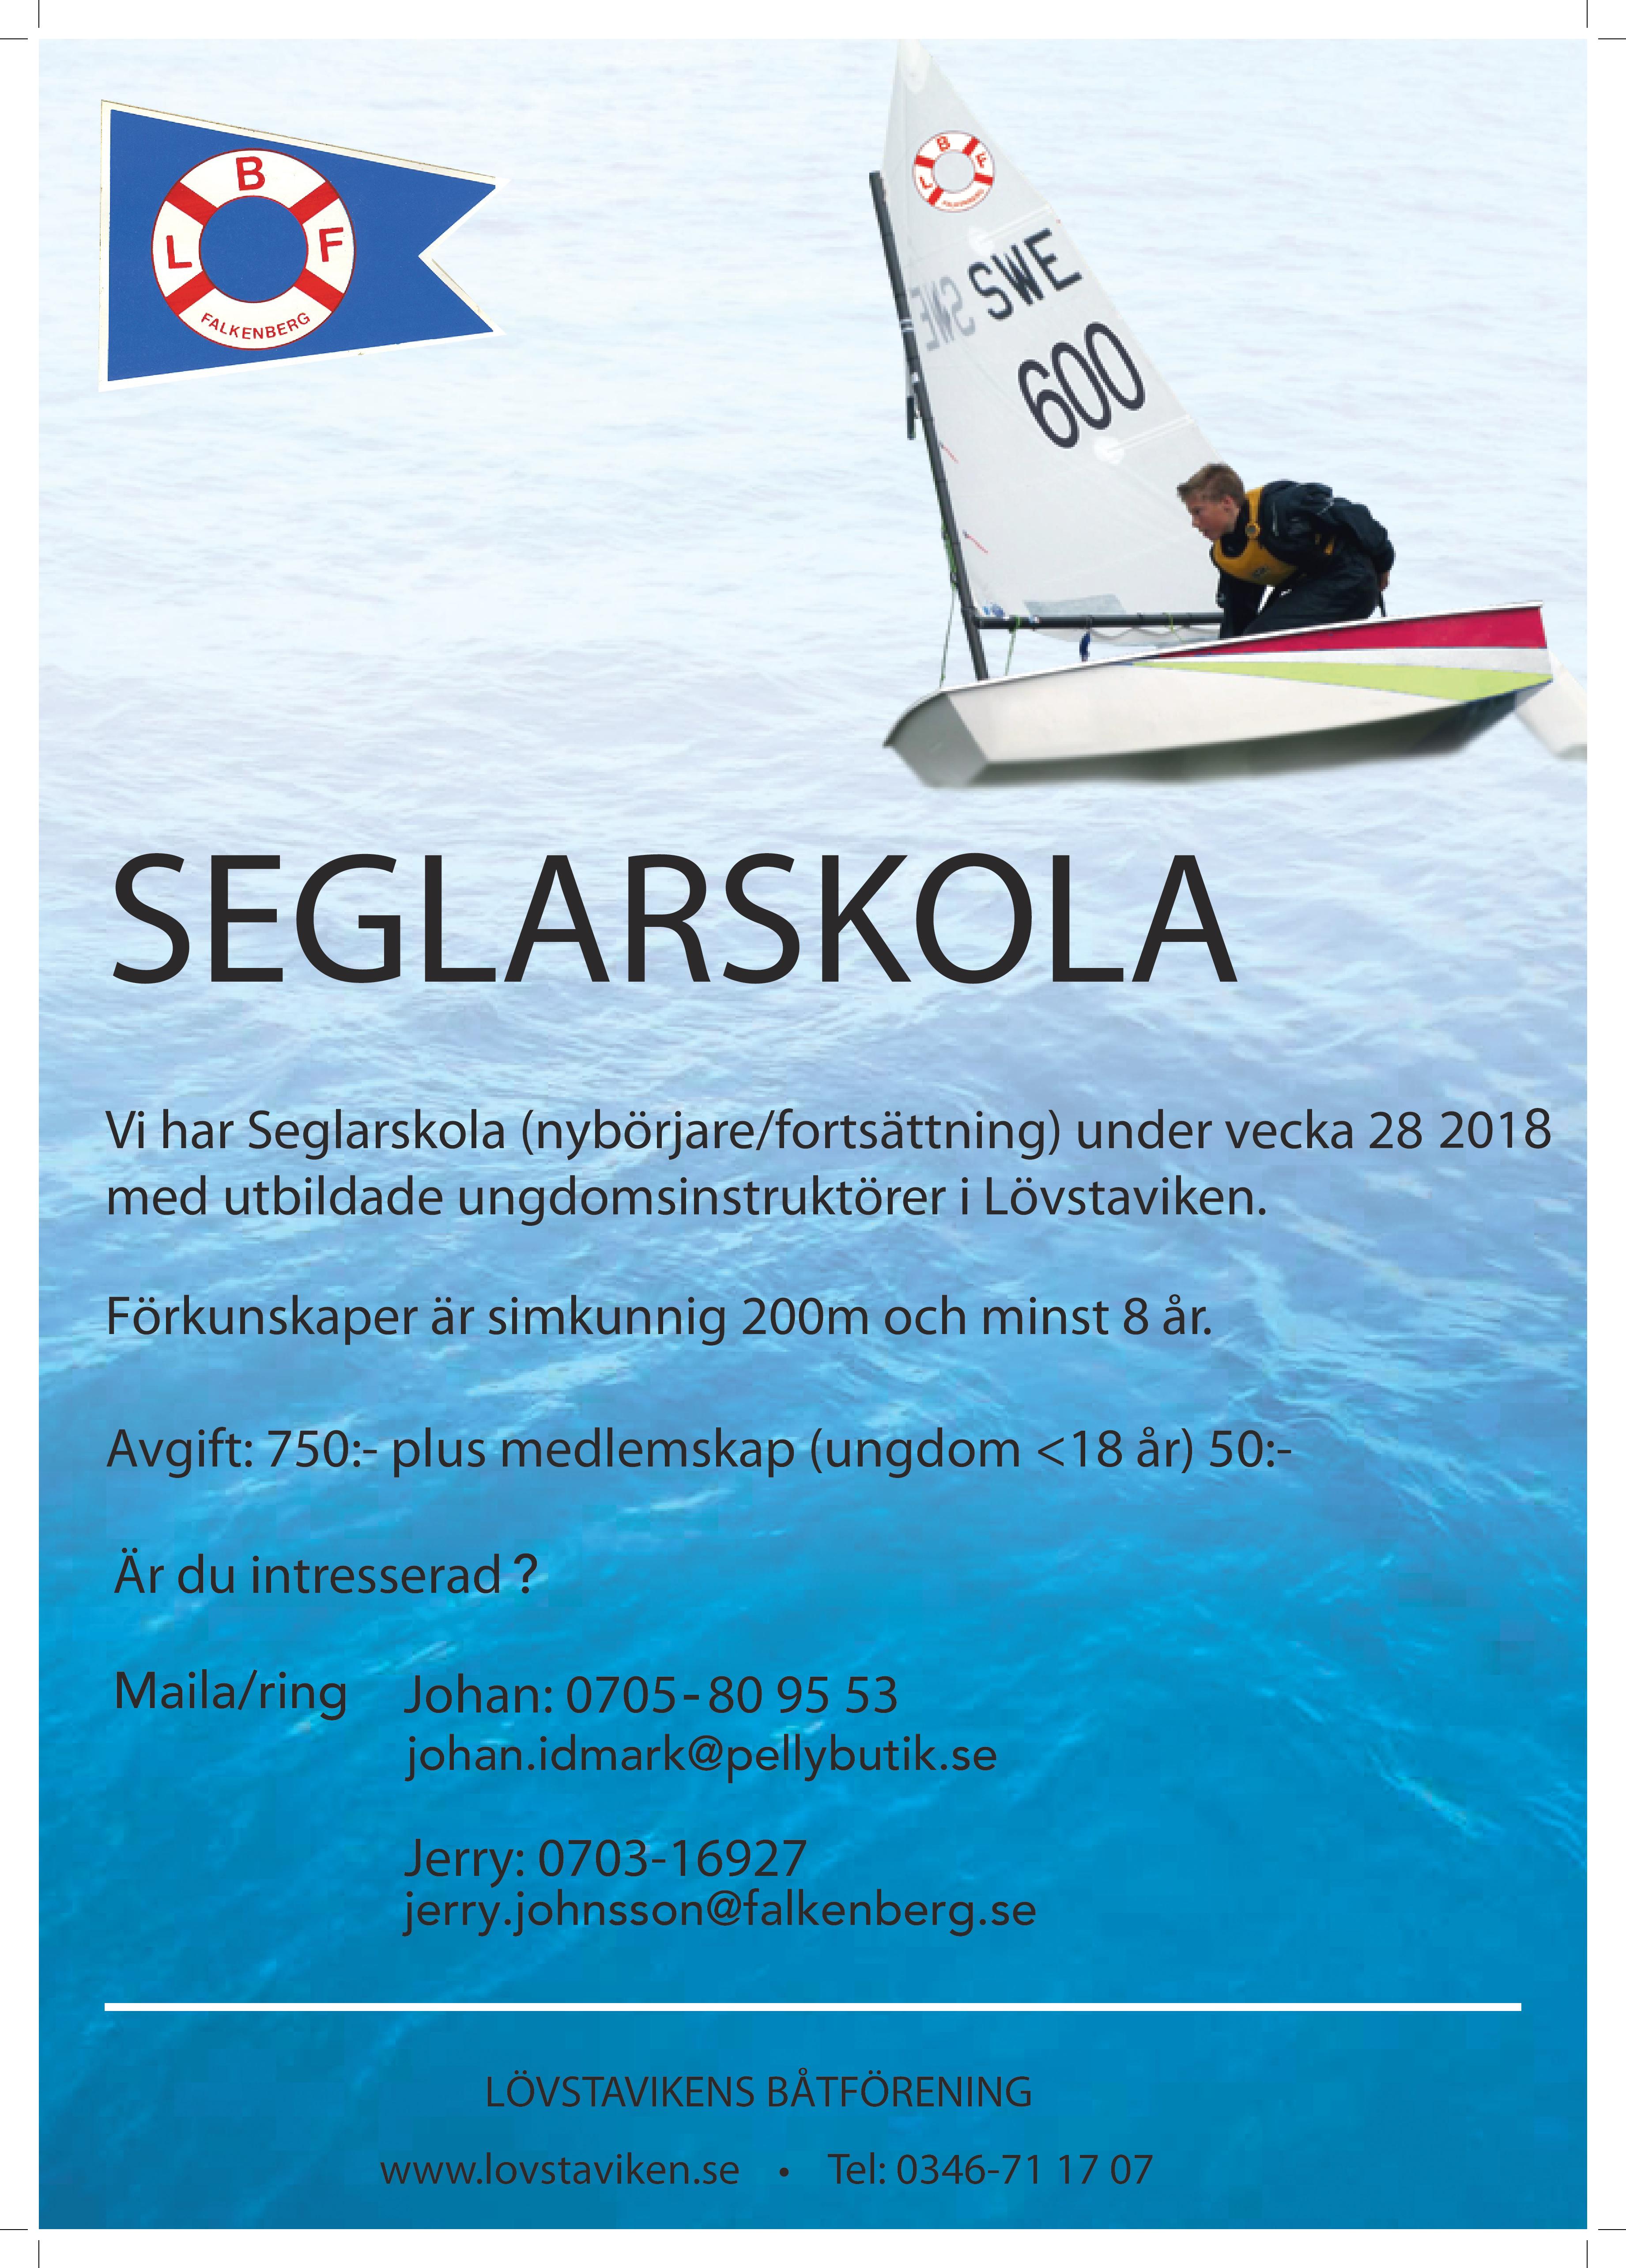 Seglarskola 2018-page-001